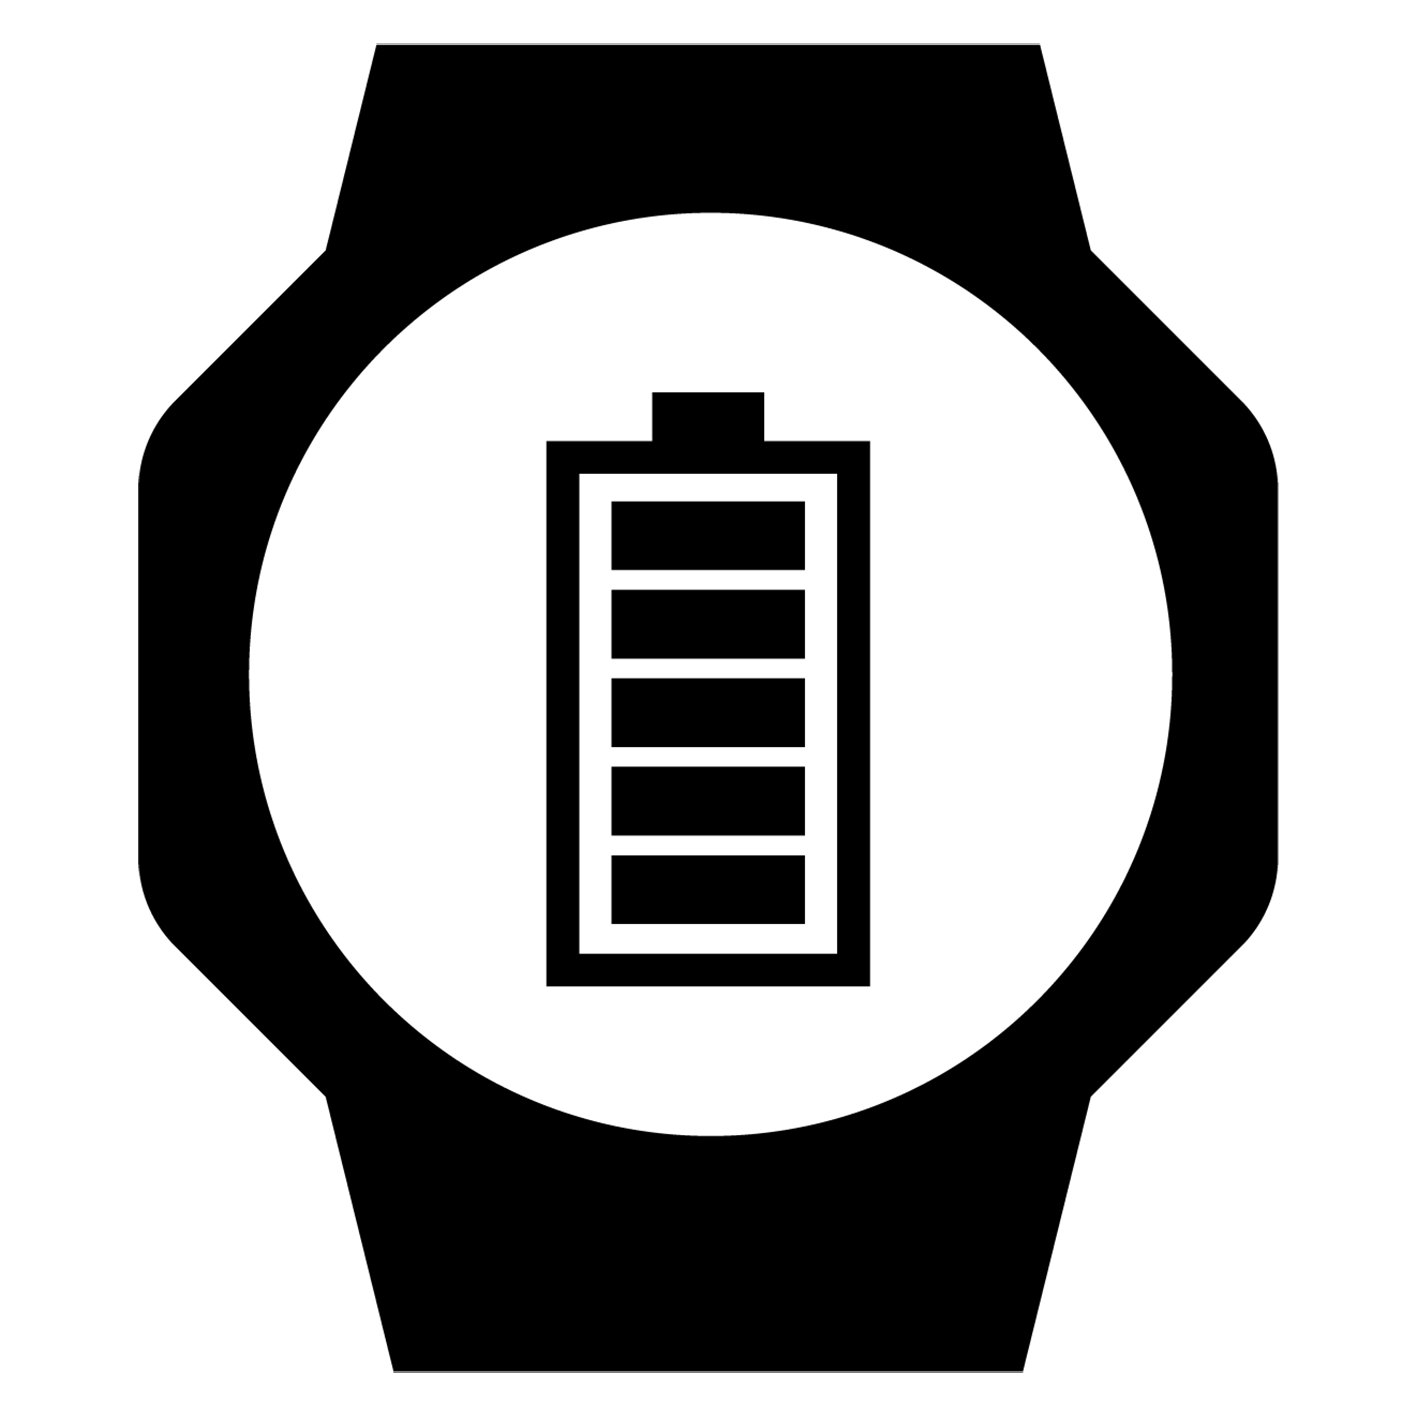 g-shock DW-6900U-1JF【15時までの注文で当日発送(休業日を除く)・国内正規品・ノベルティ付・ギフト包装無料】メンズ腕時計の画像